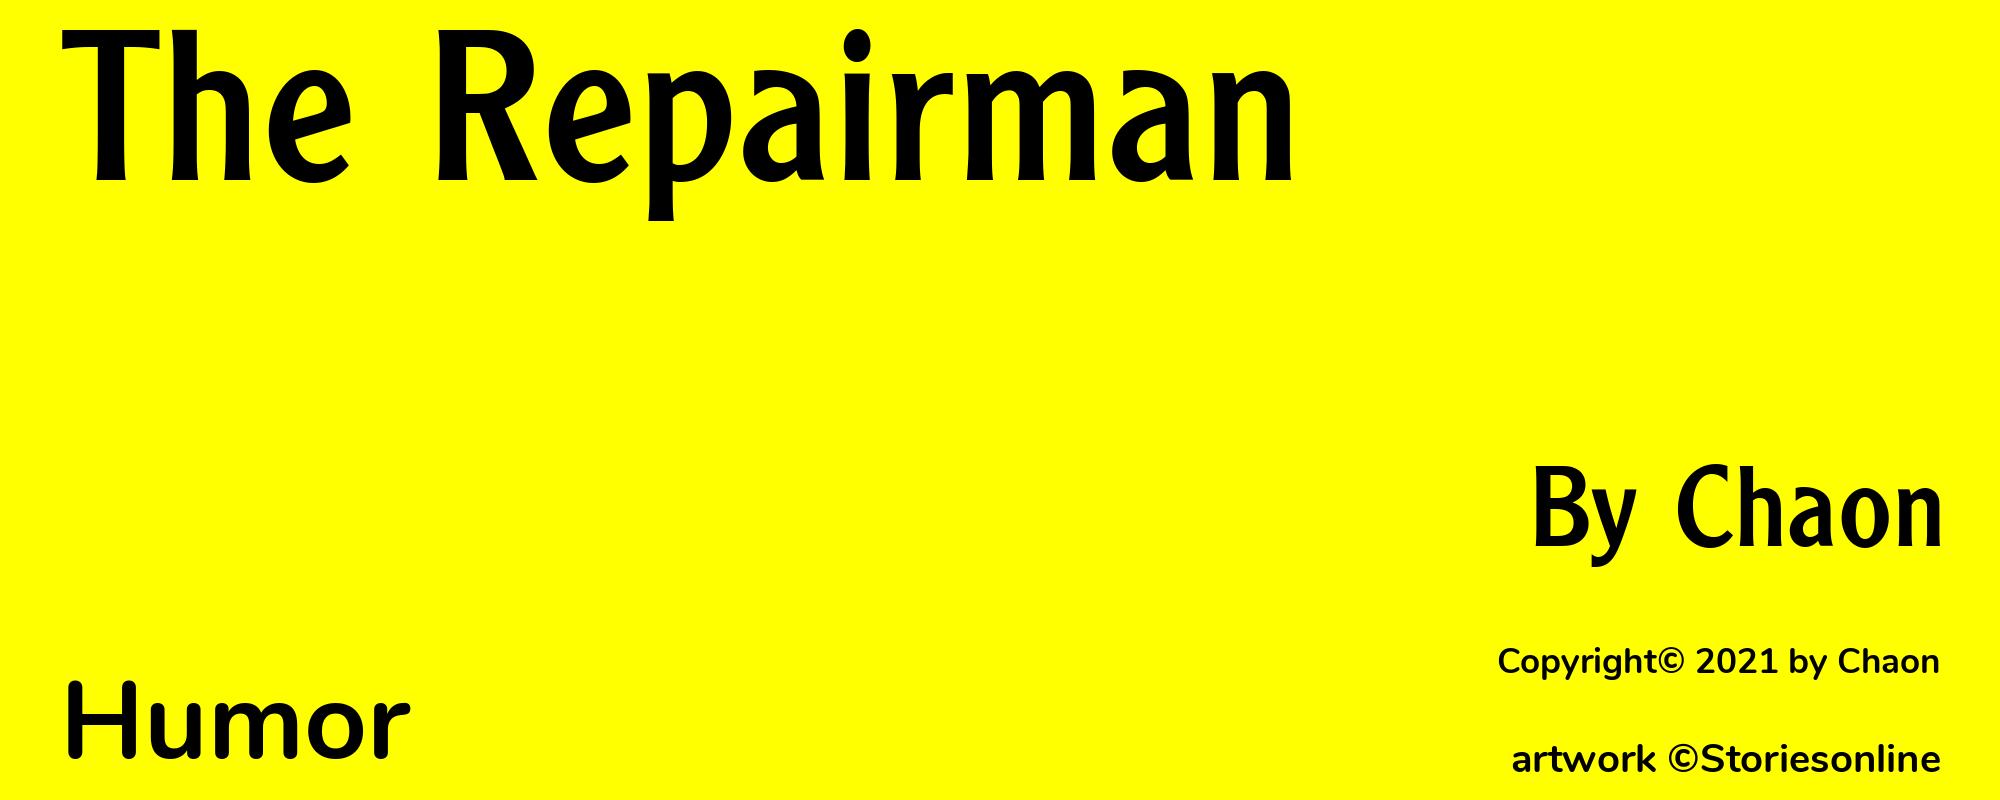 The Repairman - Cover